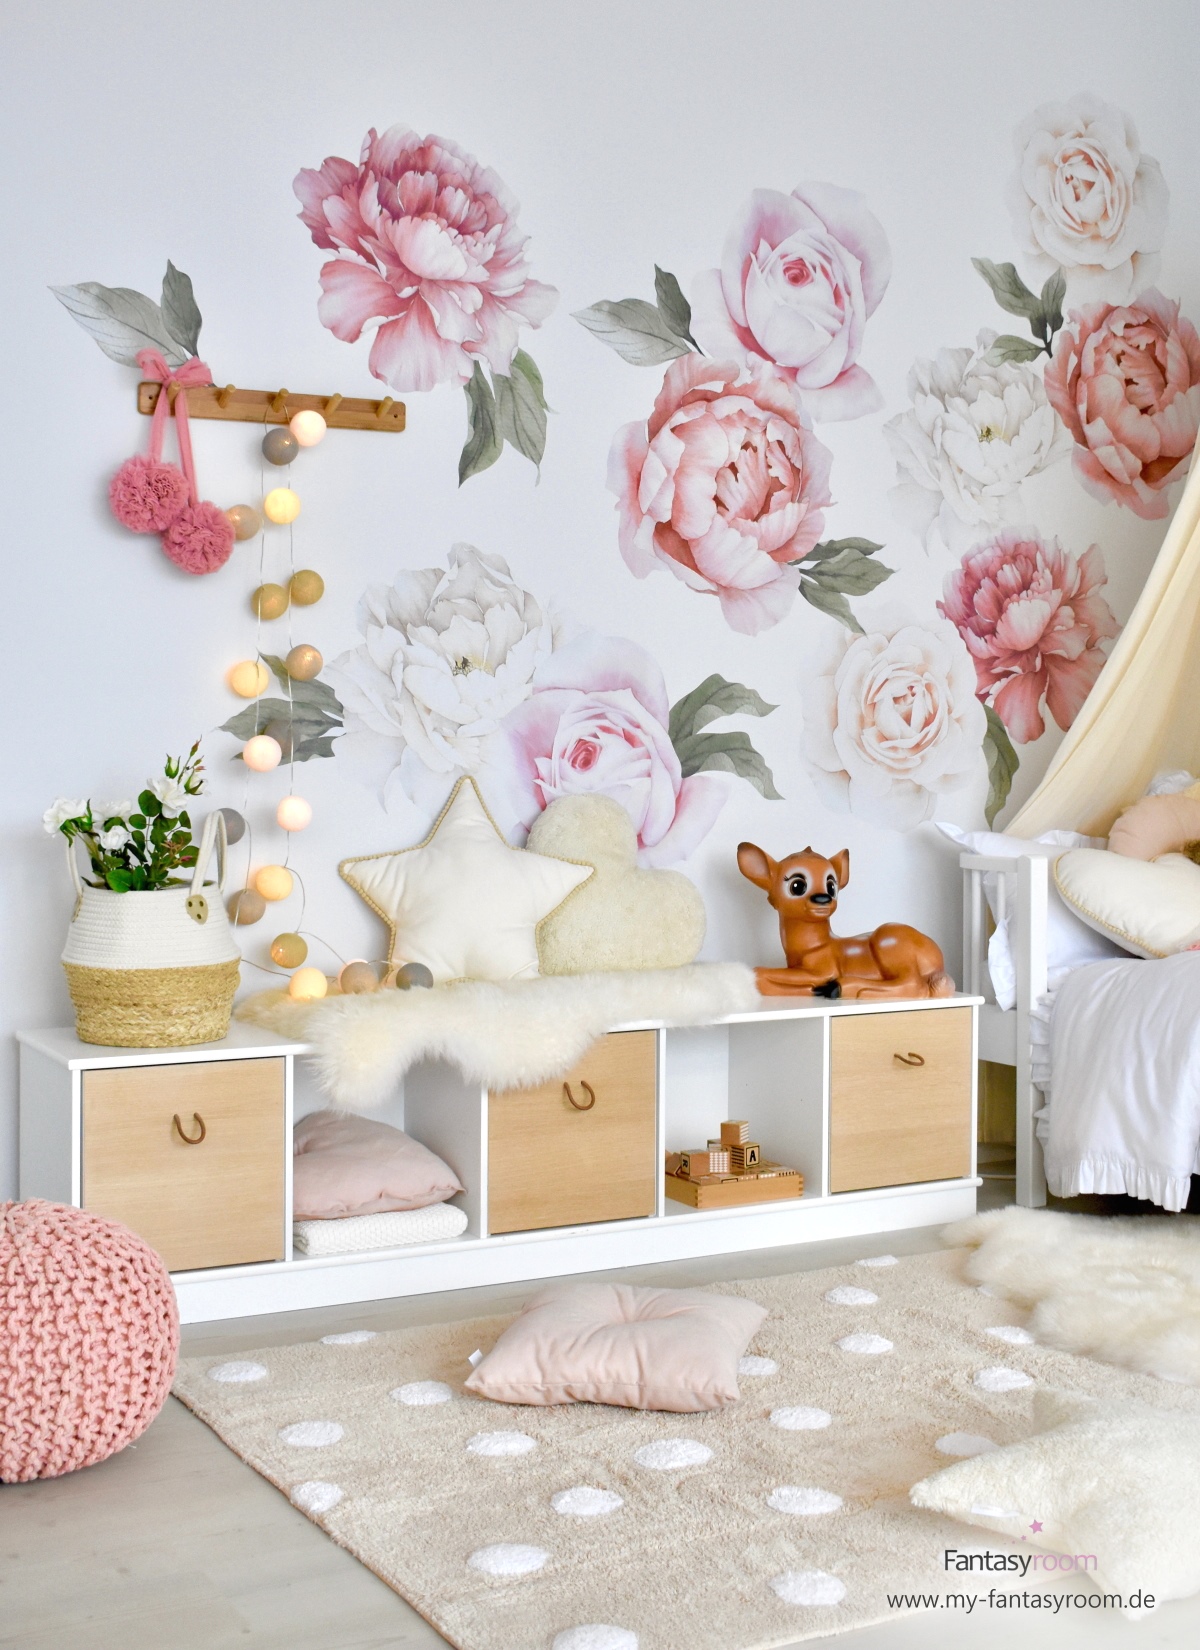 Offenes, niedriges Regal 'Wood' von Oliver Furniture im Mädchenzimmer als zusätzliche Sitzgelegenheit